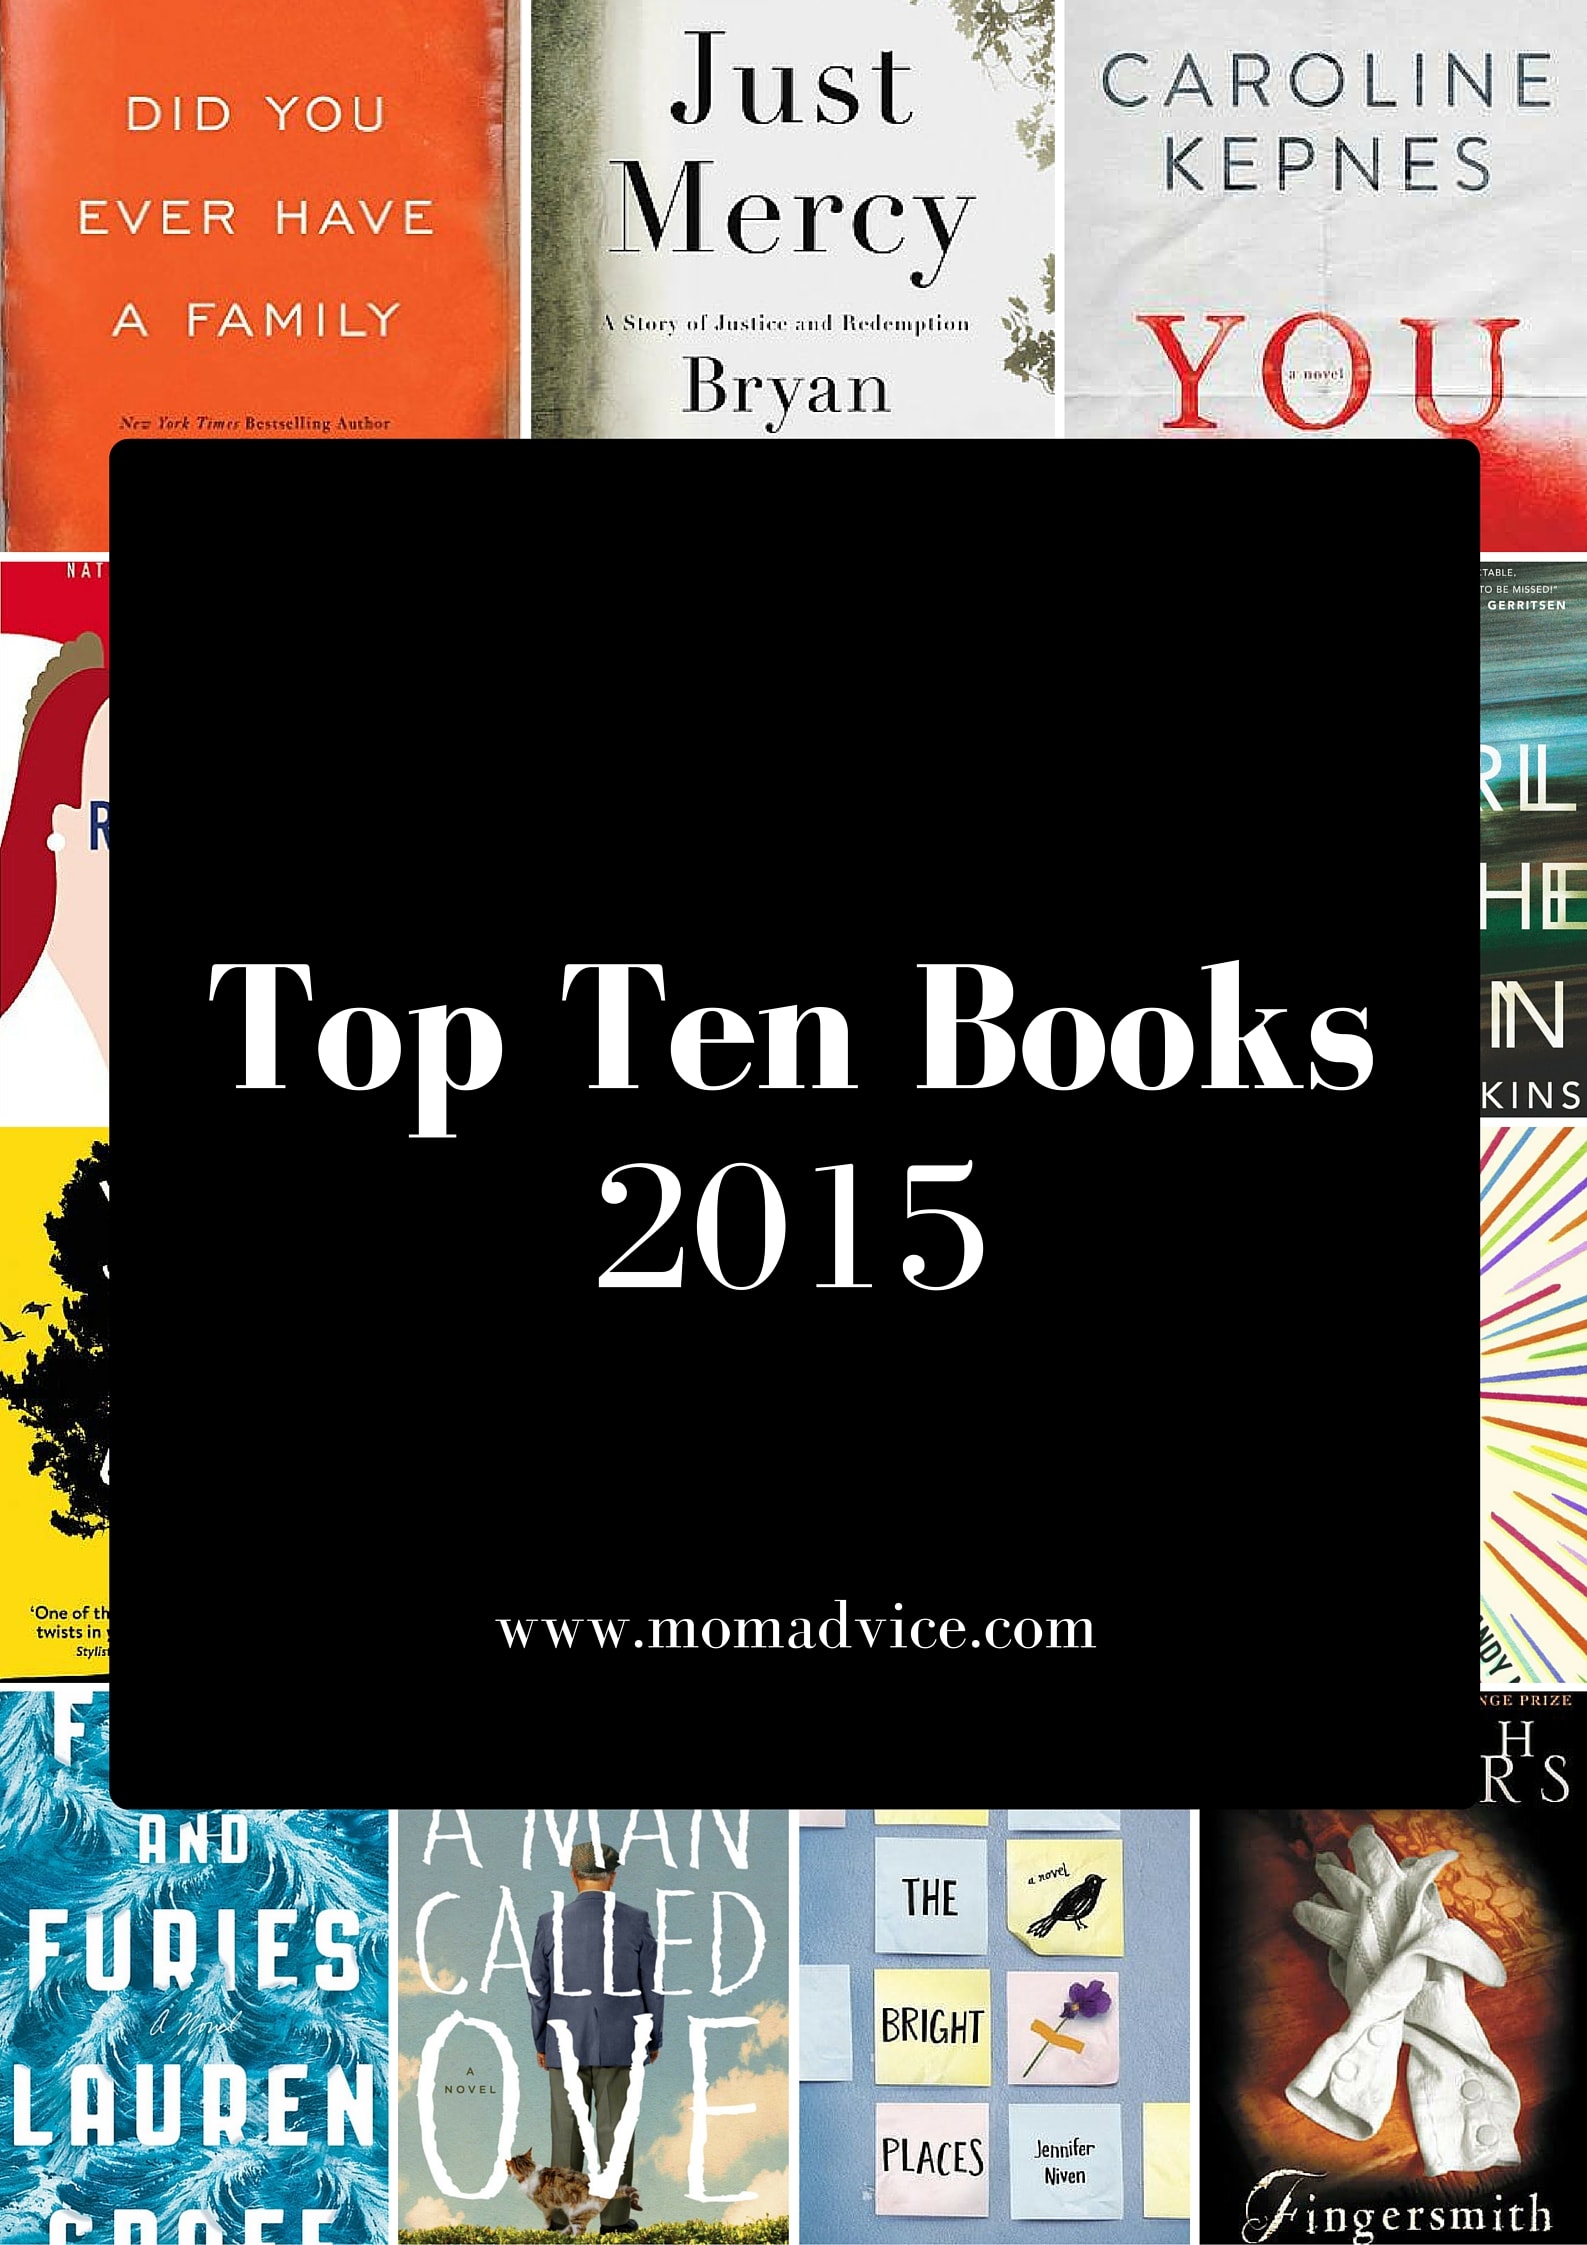 My Top Ten Books of 2015